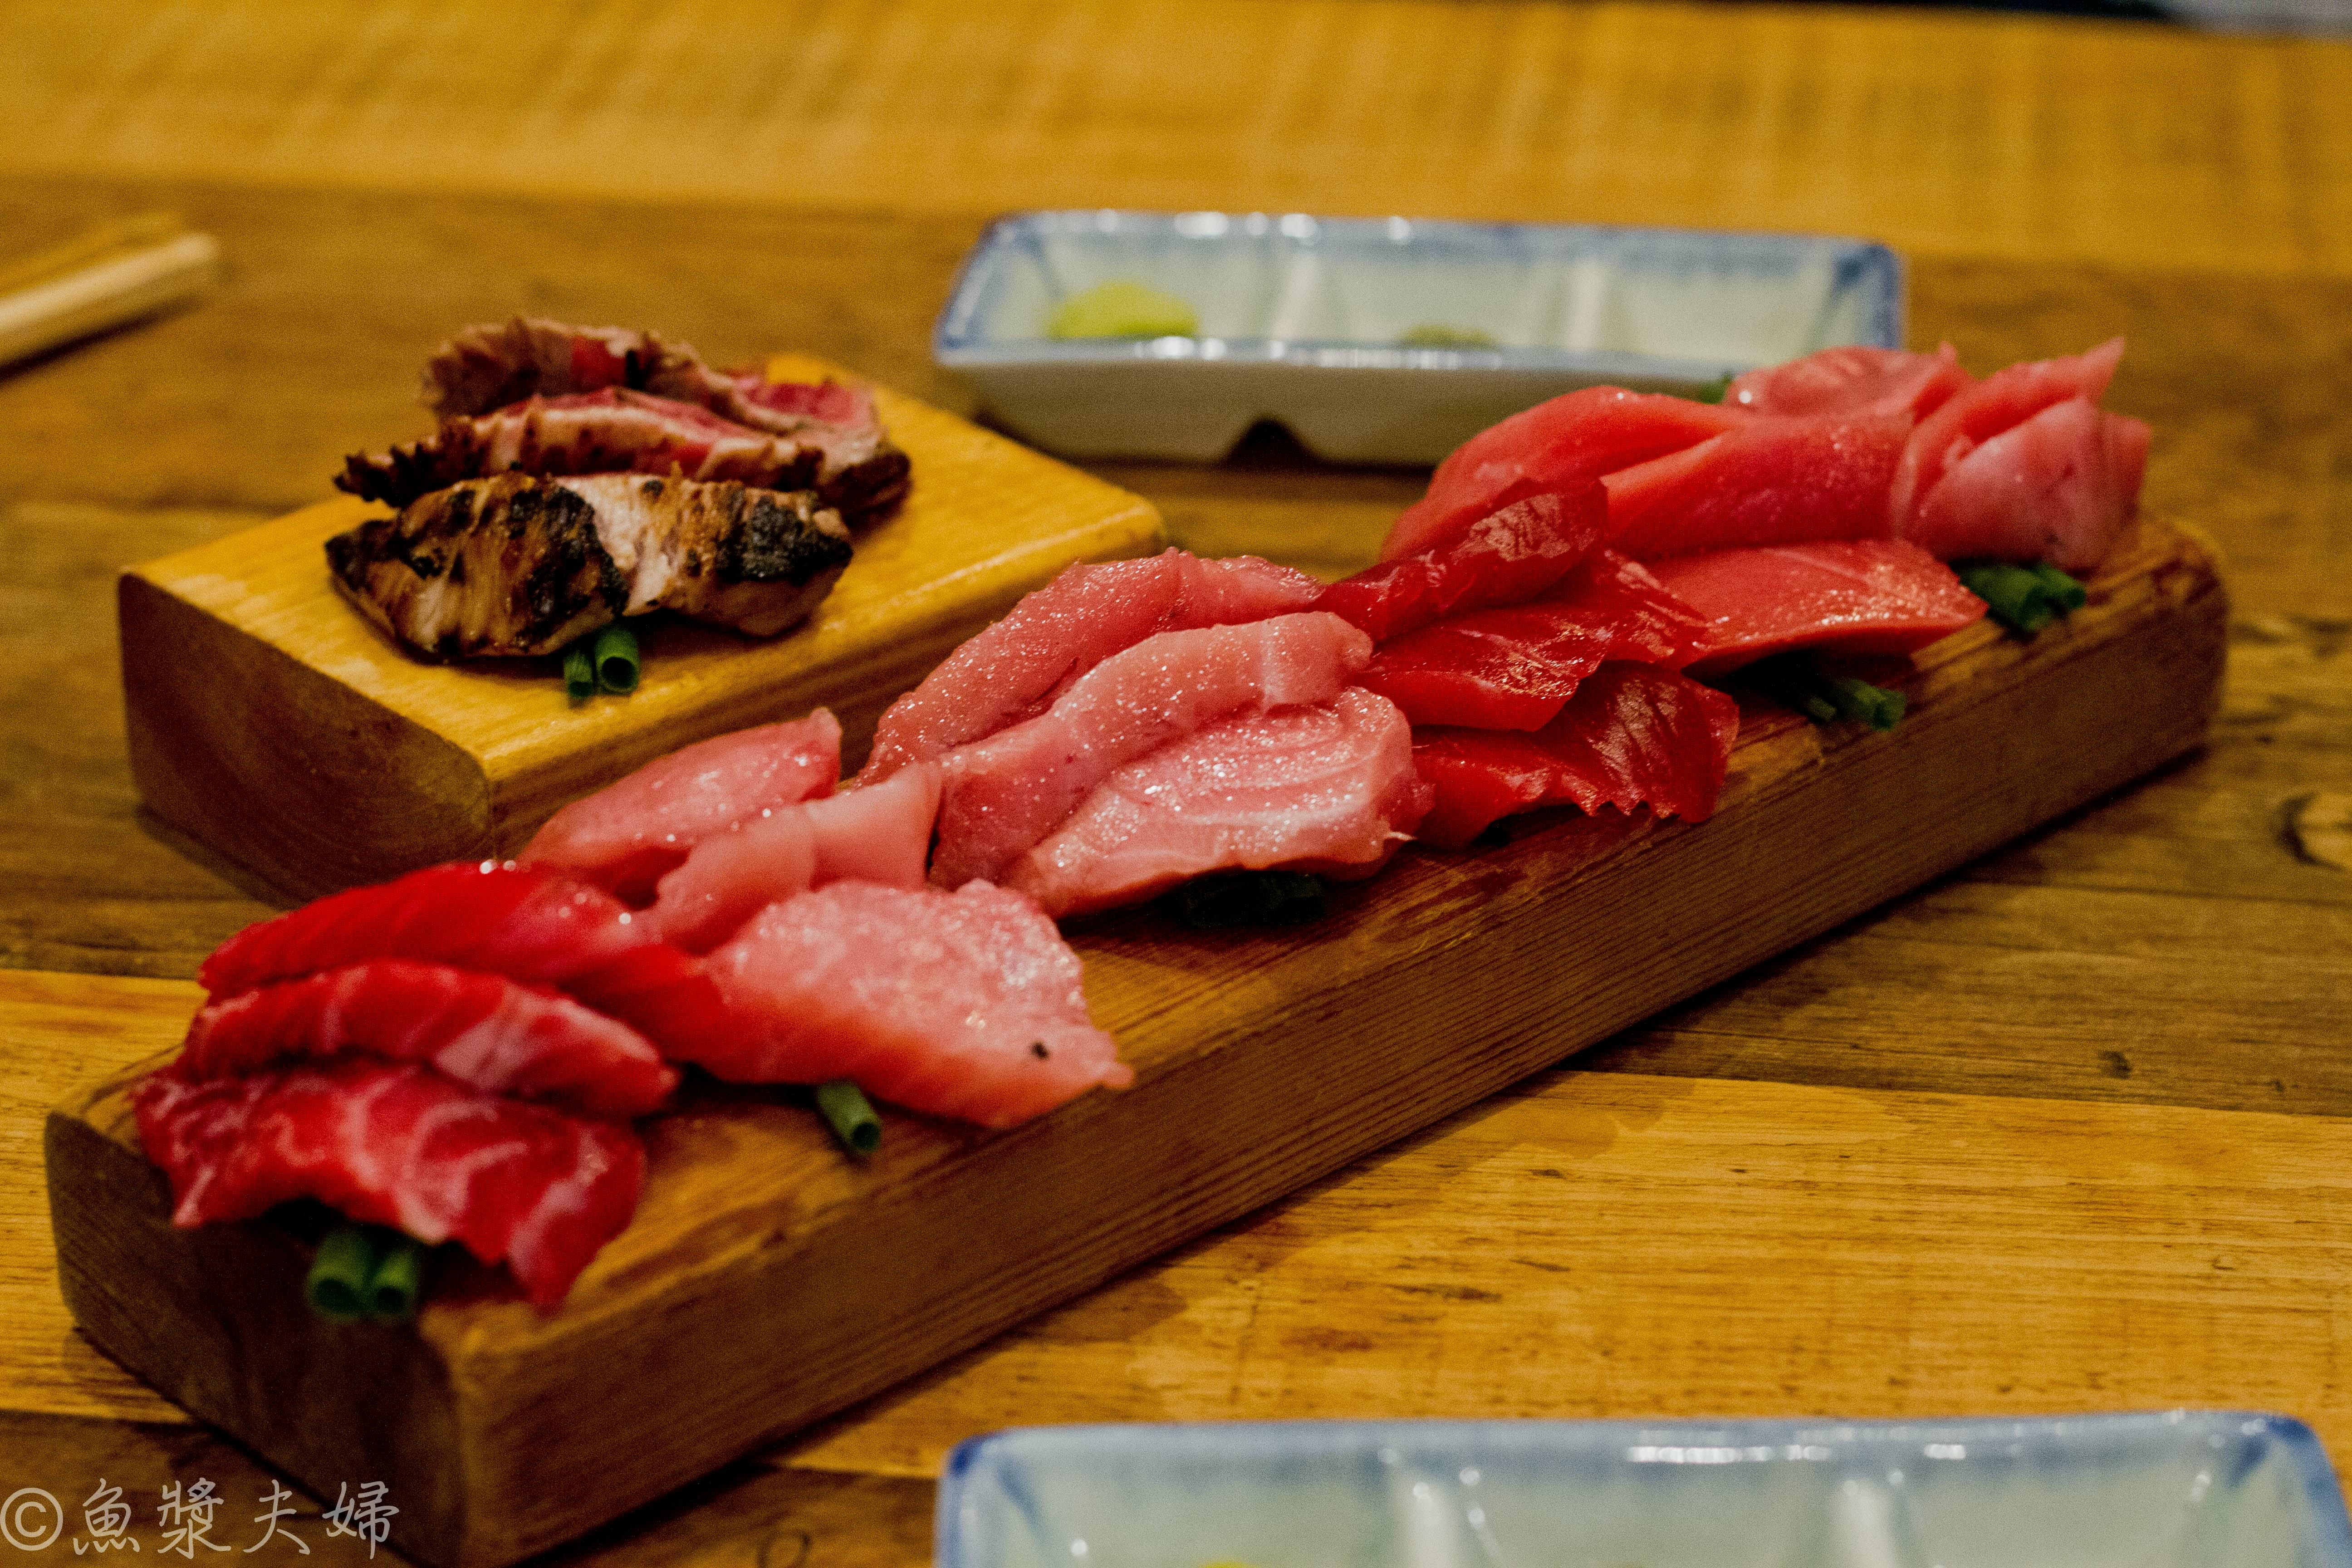 圖 東京中野 鮪魚市場 結合粗獷與纖細的潮店